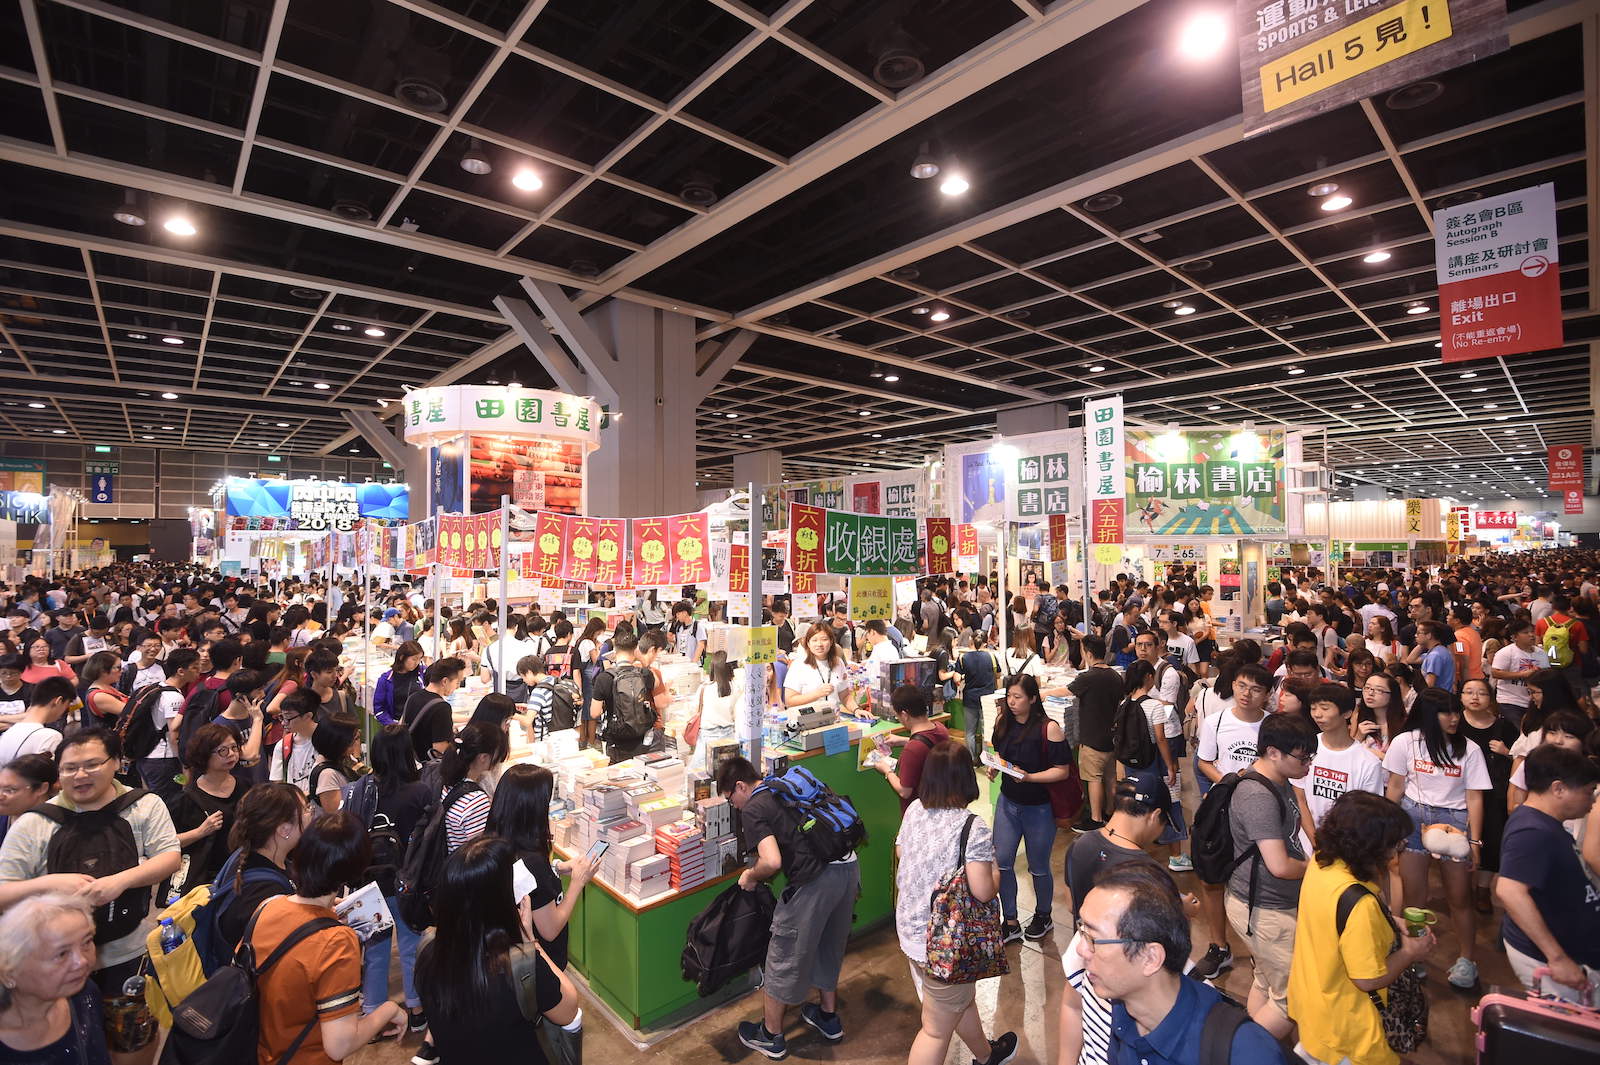 Crowds attend the annual Hong Kong Book Fair in 2018. Photo via Hong Kong Book Fair.